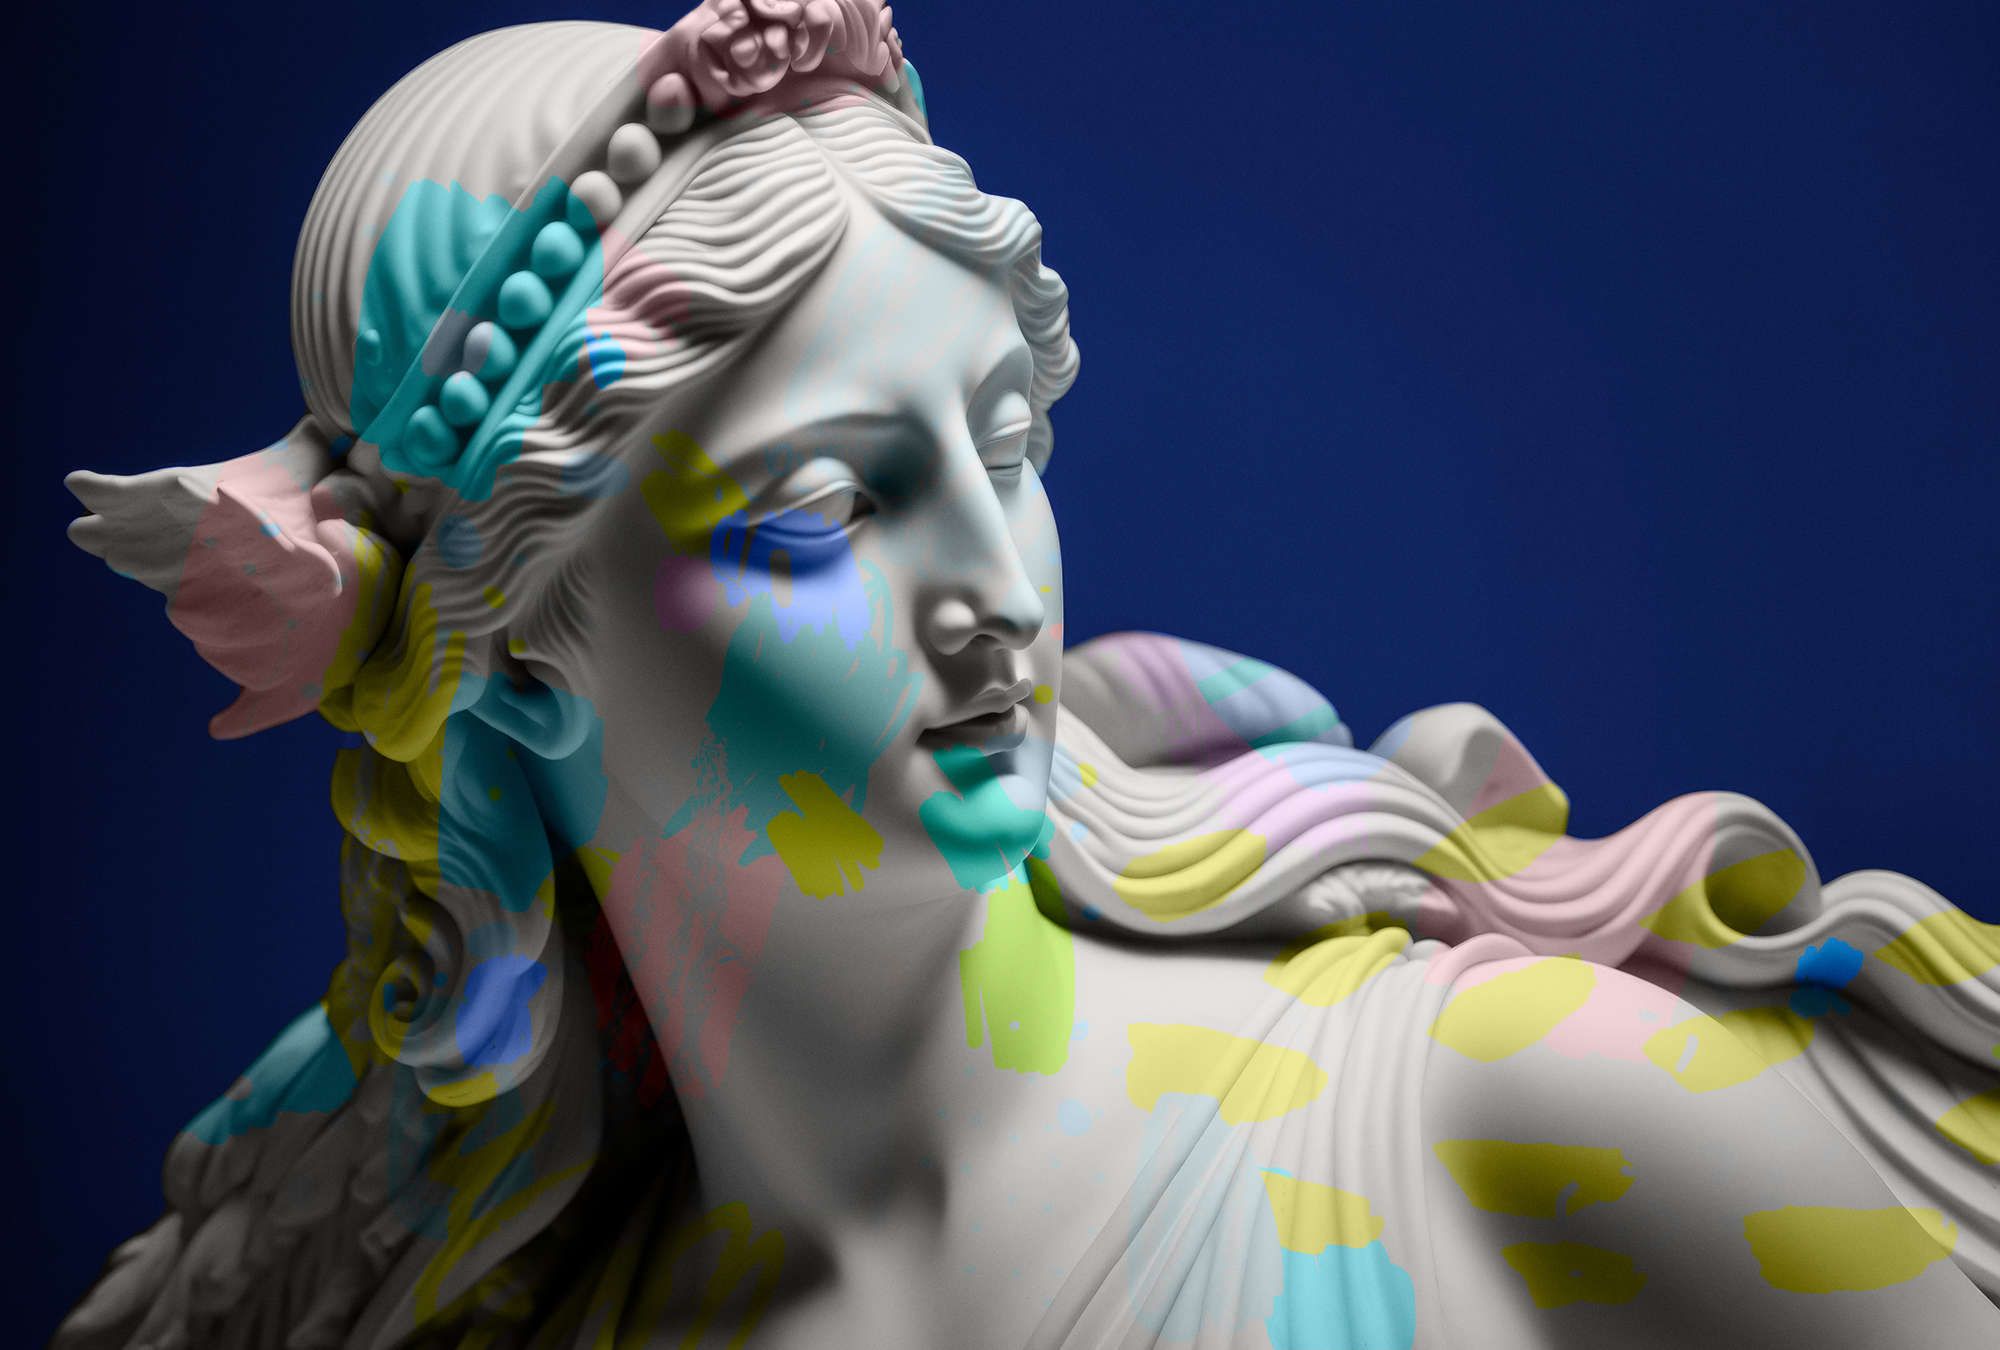             Fotomural »anthea« - Escultura femenina con toques de color - Tela no tejida de textura ligera
        